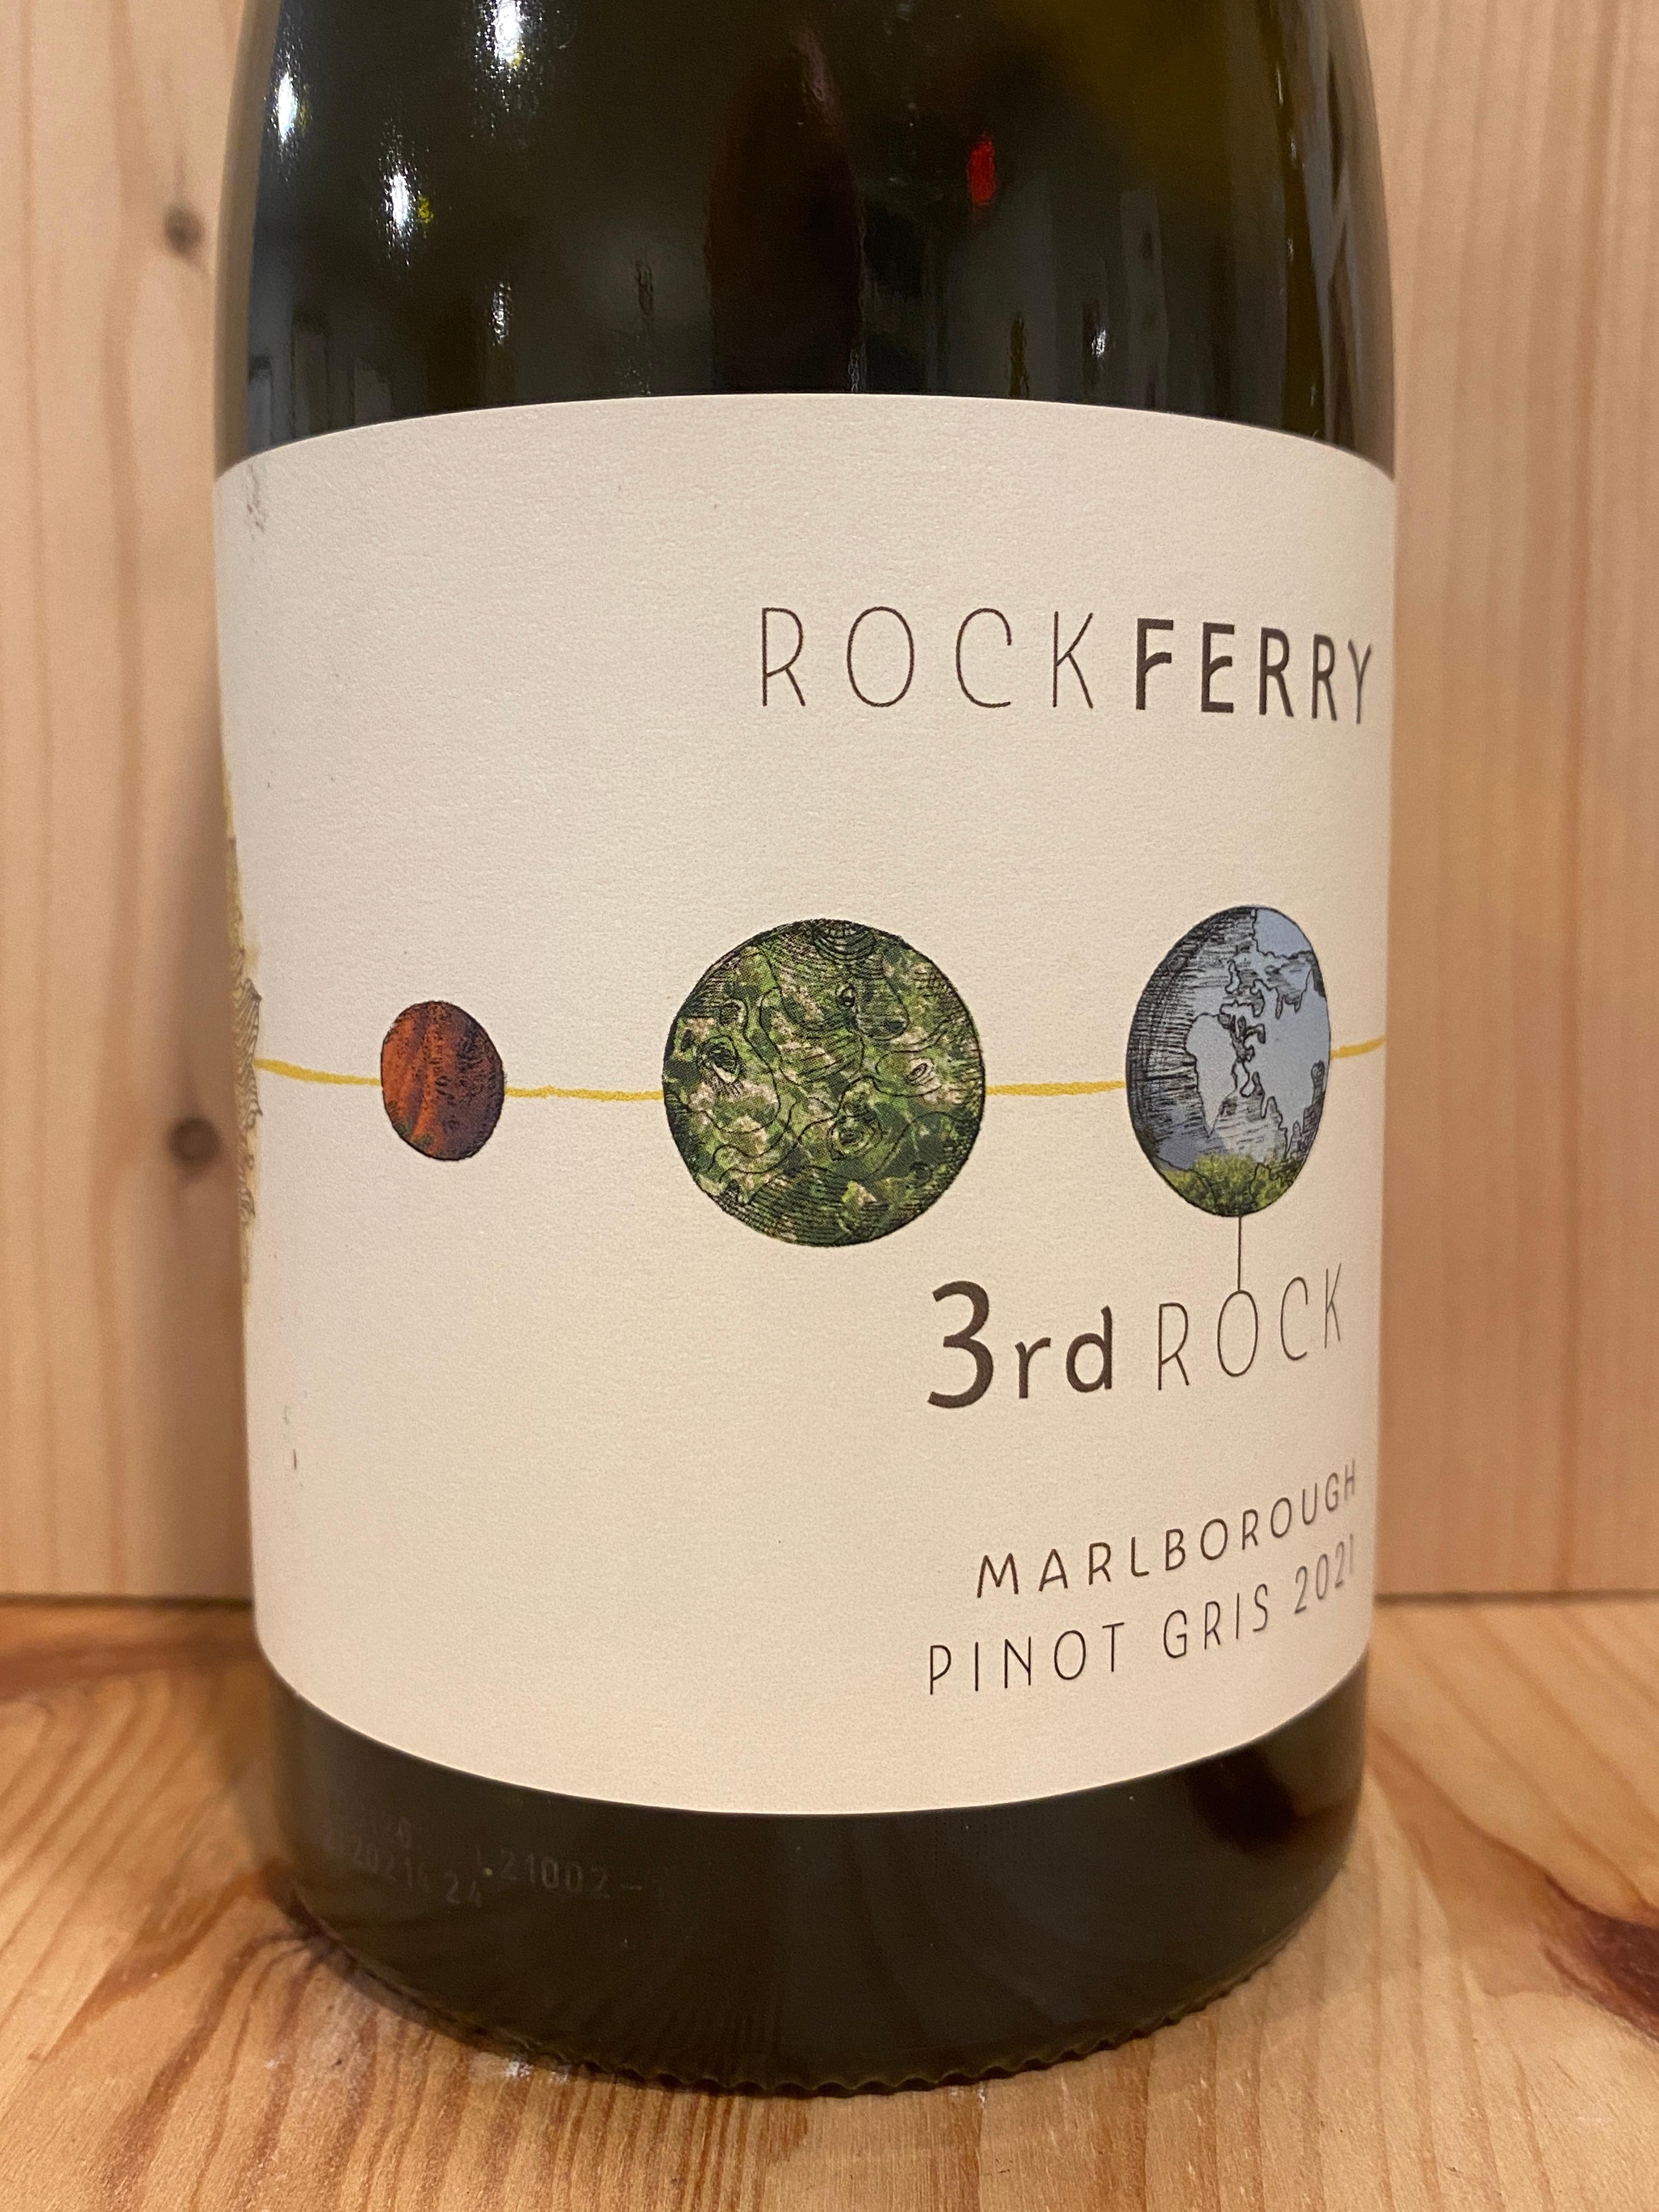 Rock Ferry "3rd Rock" Pinot Gris 2021: Marlborough, New Zealand